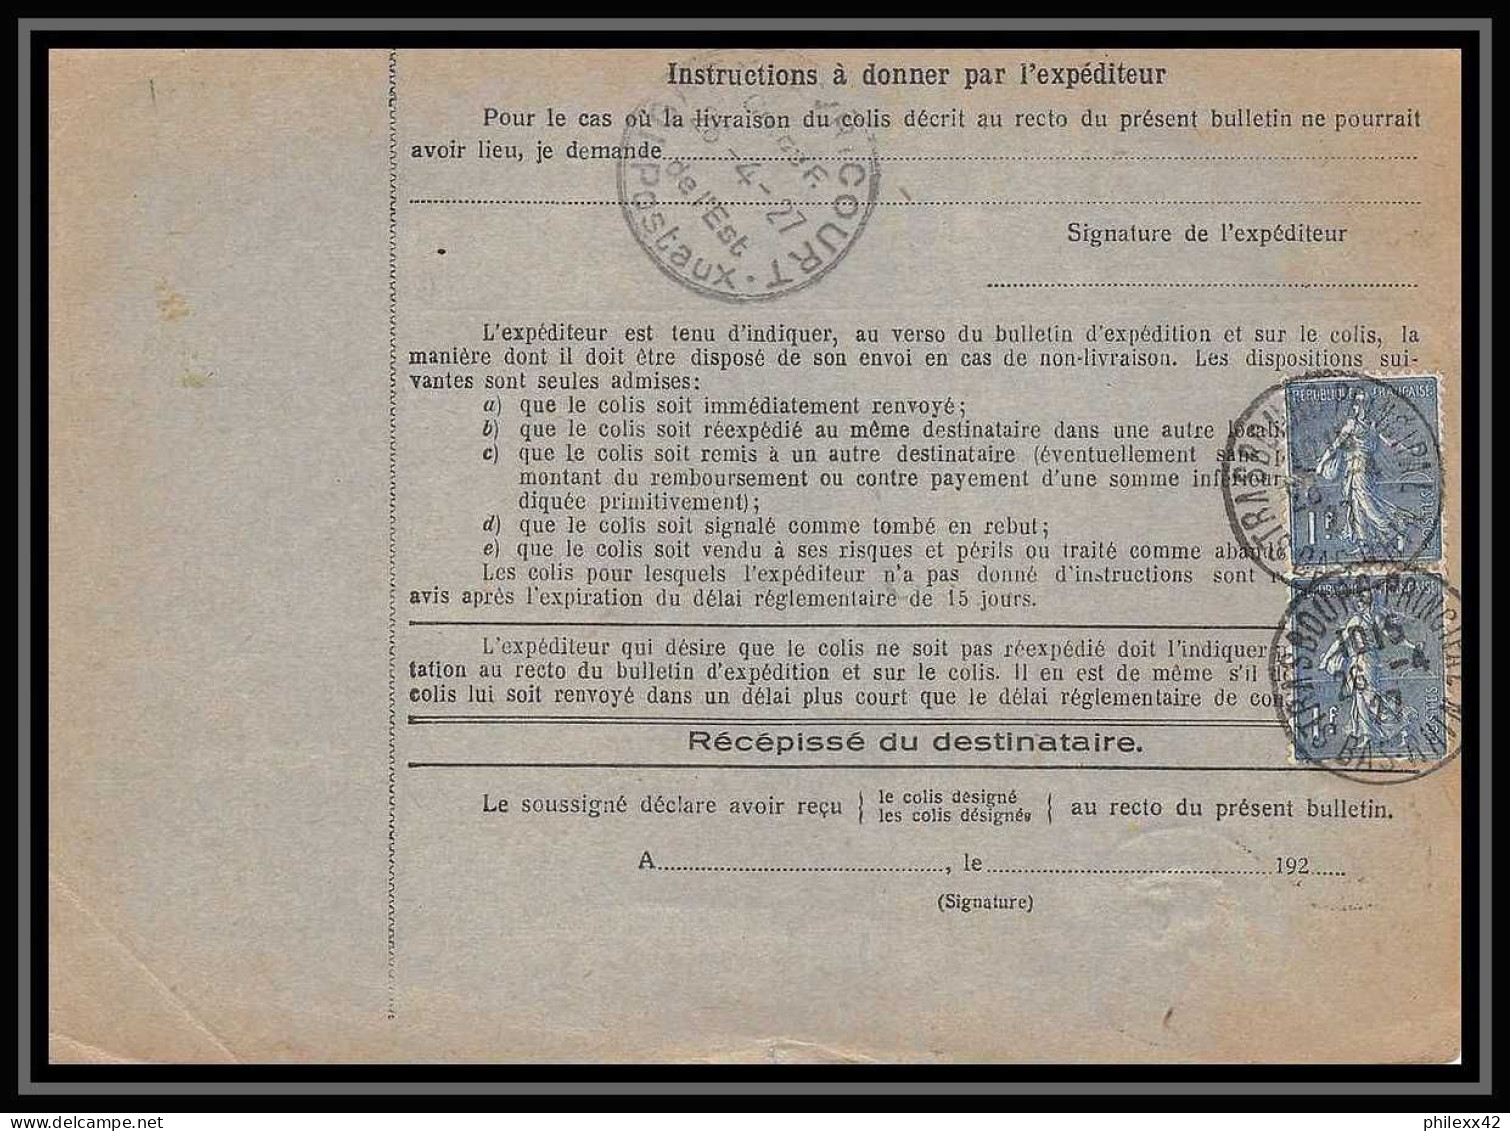 25209/ Bulletin D'expédition France Colis Postaux Fiscal Bas-Rhin Strasbourg Ppal A 1927 Pour Seine Et Oise Merson N°123 - Lettres & Documents